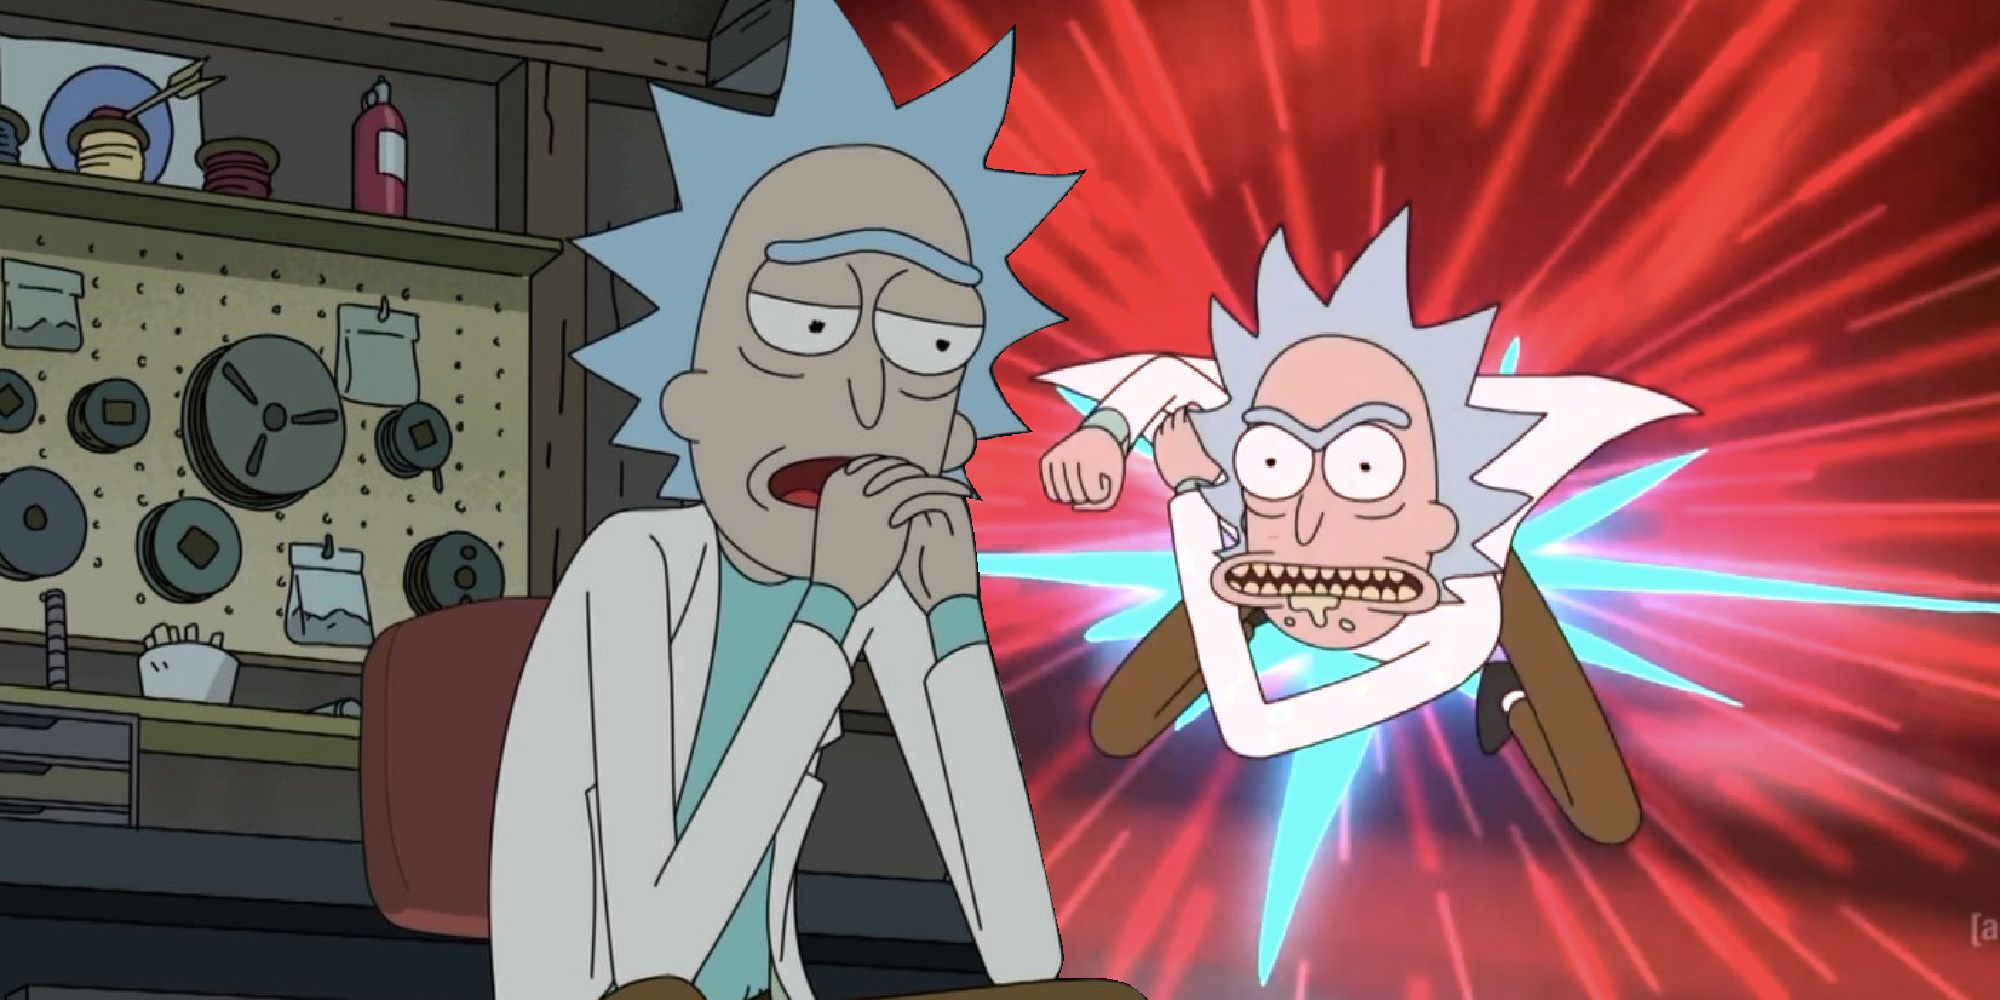 Rick Rick and Morty season 5